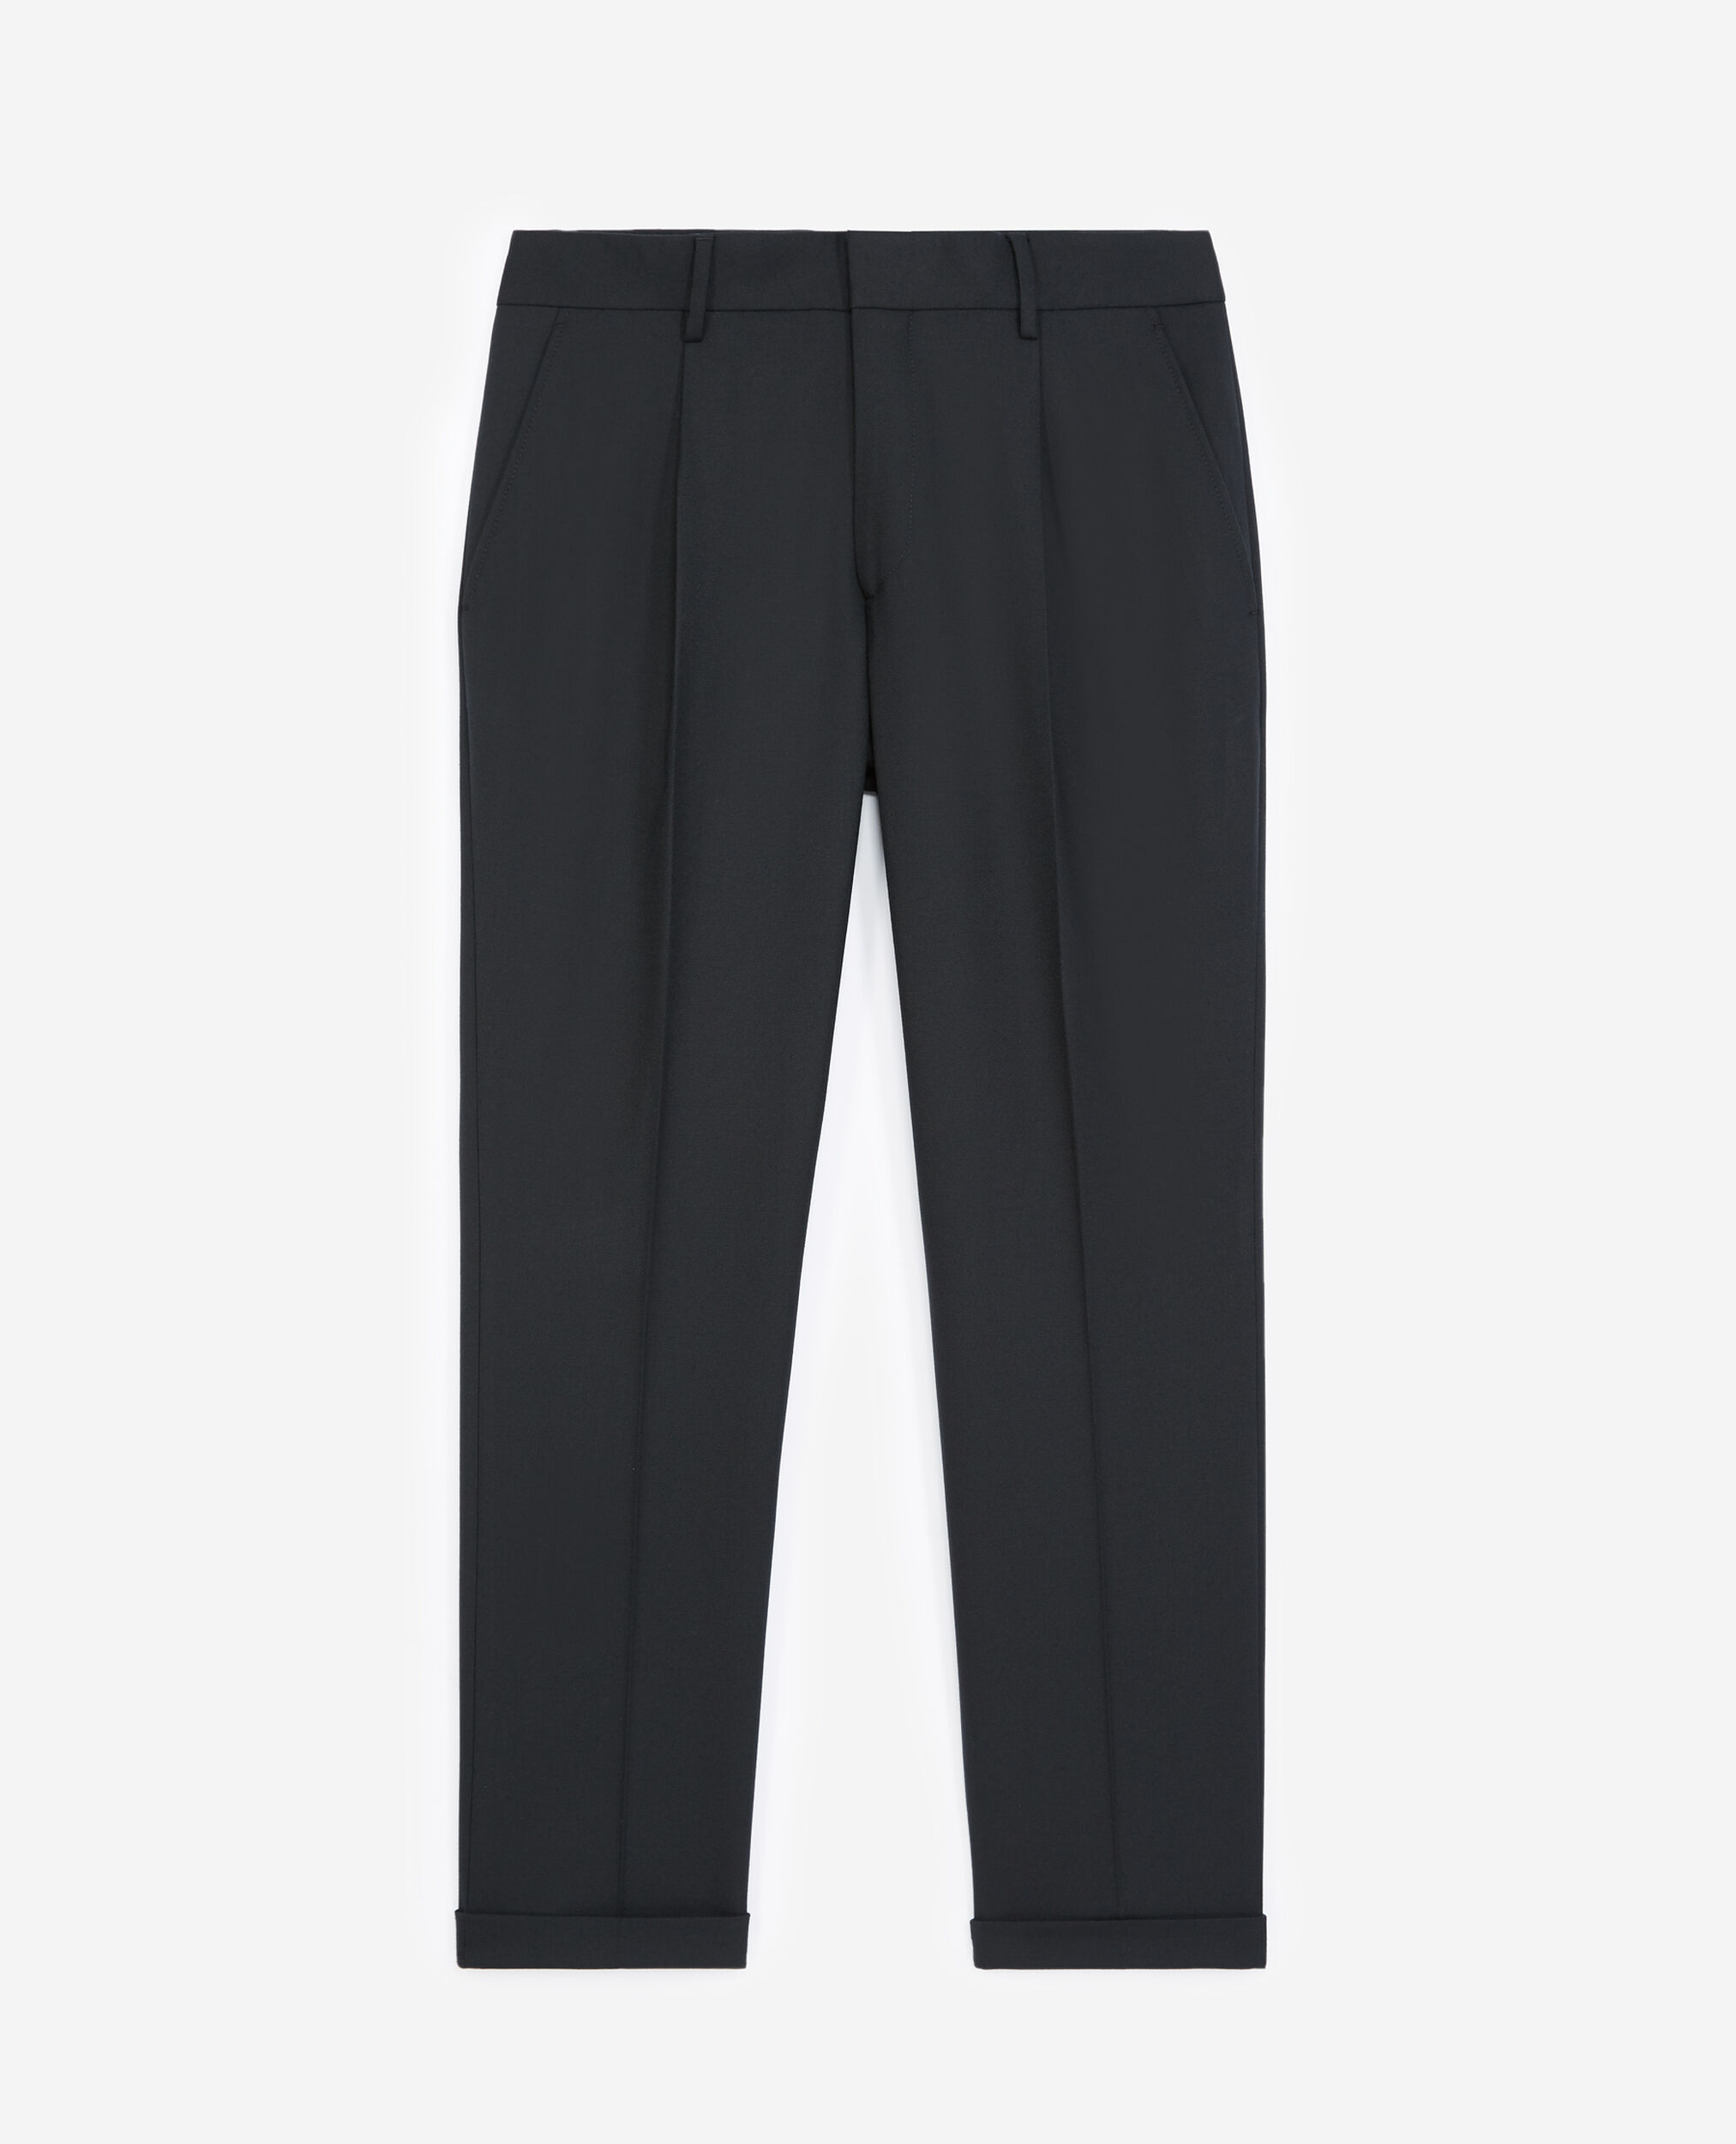 Pantalon laine noir, BLACK, hi-res image number null